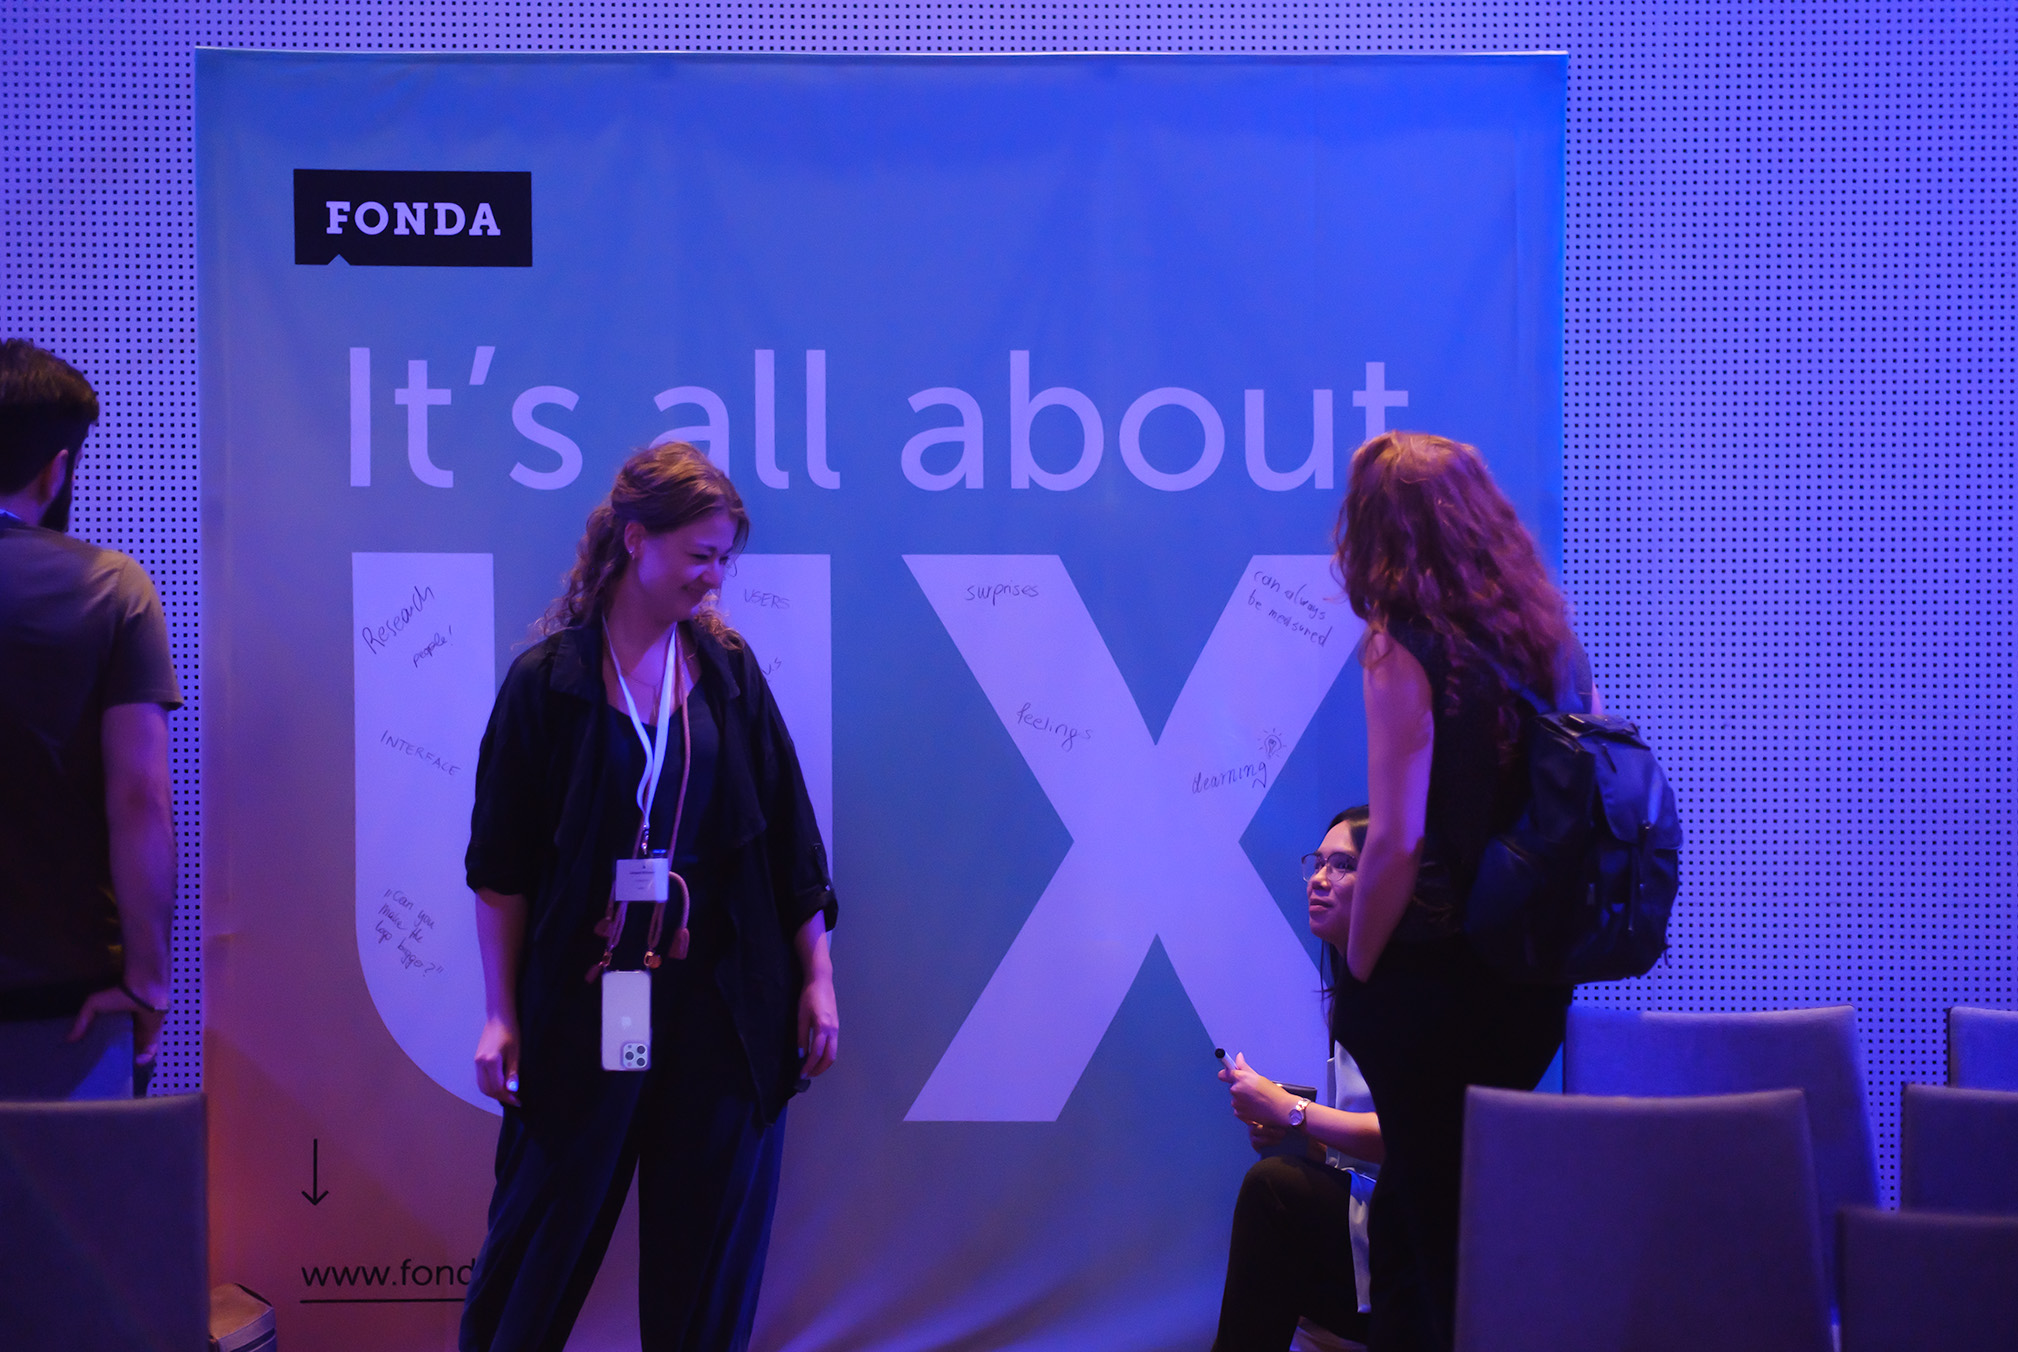 Eine Besucherin der UXCon 2022 steht vor der FONDA Fotowall, auf der der Slogan 